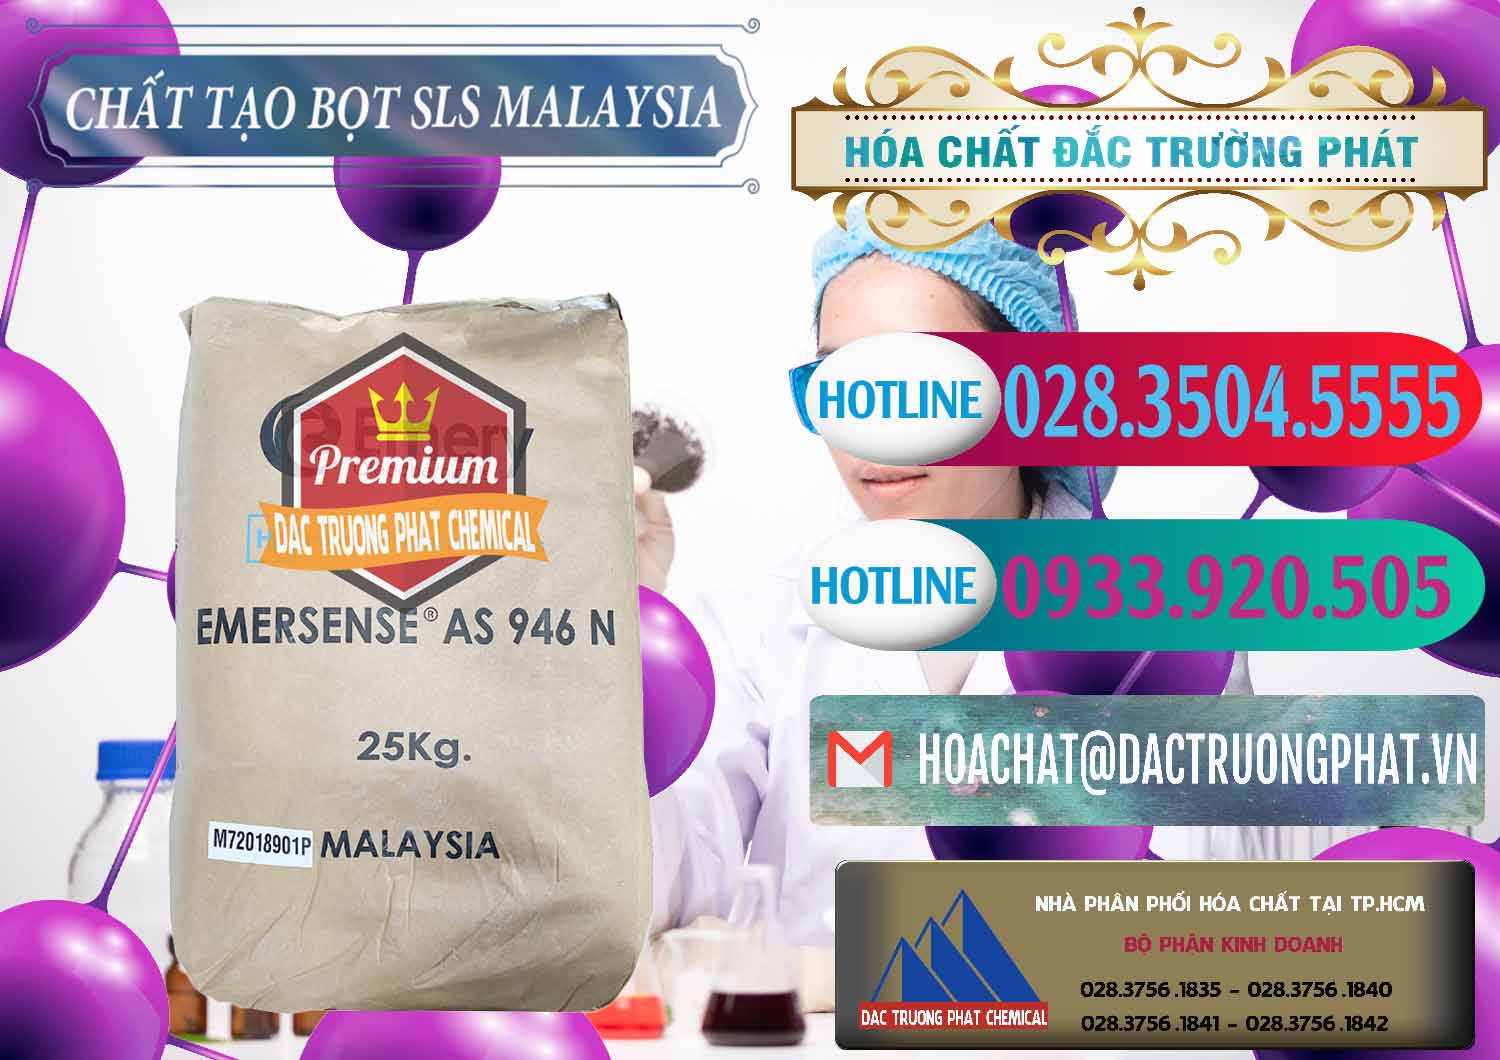 Công ty chuyên cung cấp & bán Chất Tạo Bọt SLS Emery - Emersense AS 946N Mã Lai Malaysia - 0423 - Cty chuyên cung cấp & nhập khẩu hóa chất tại TP.HCM - truongphat.vn